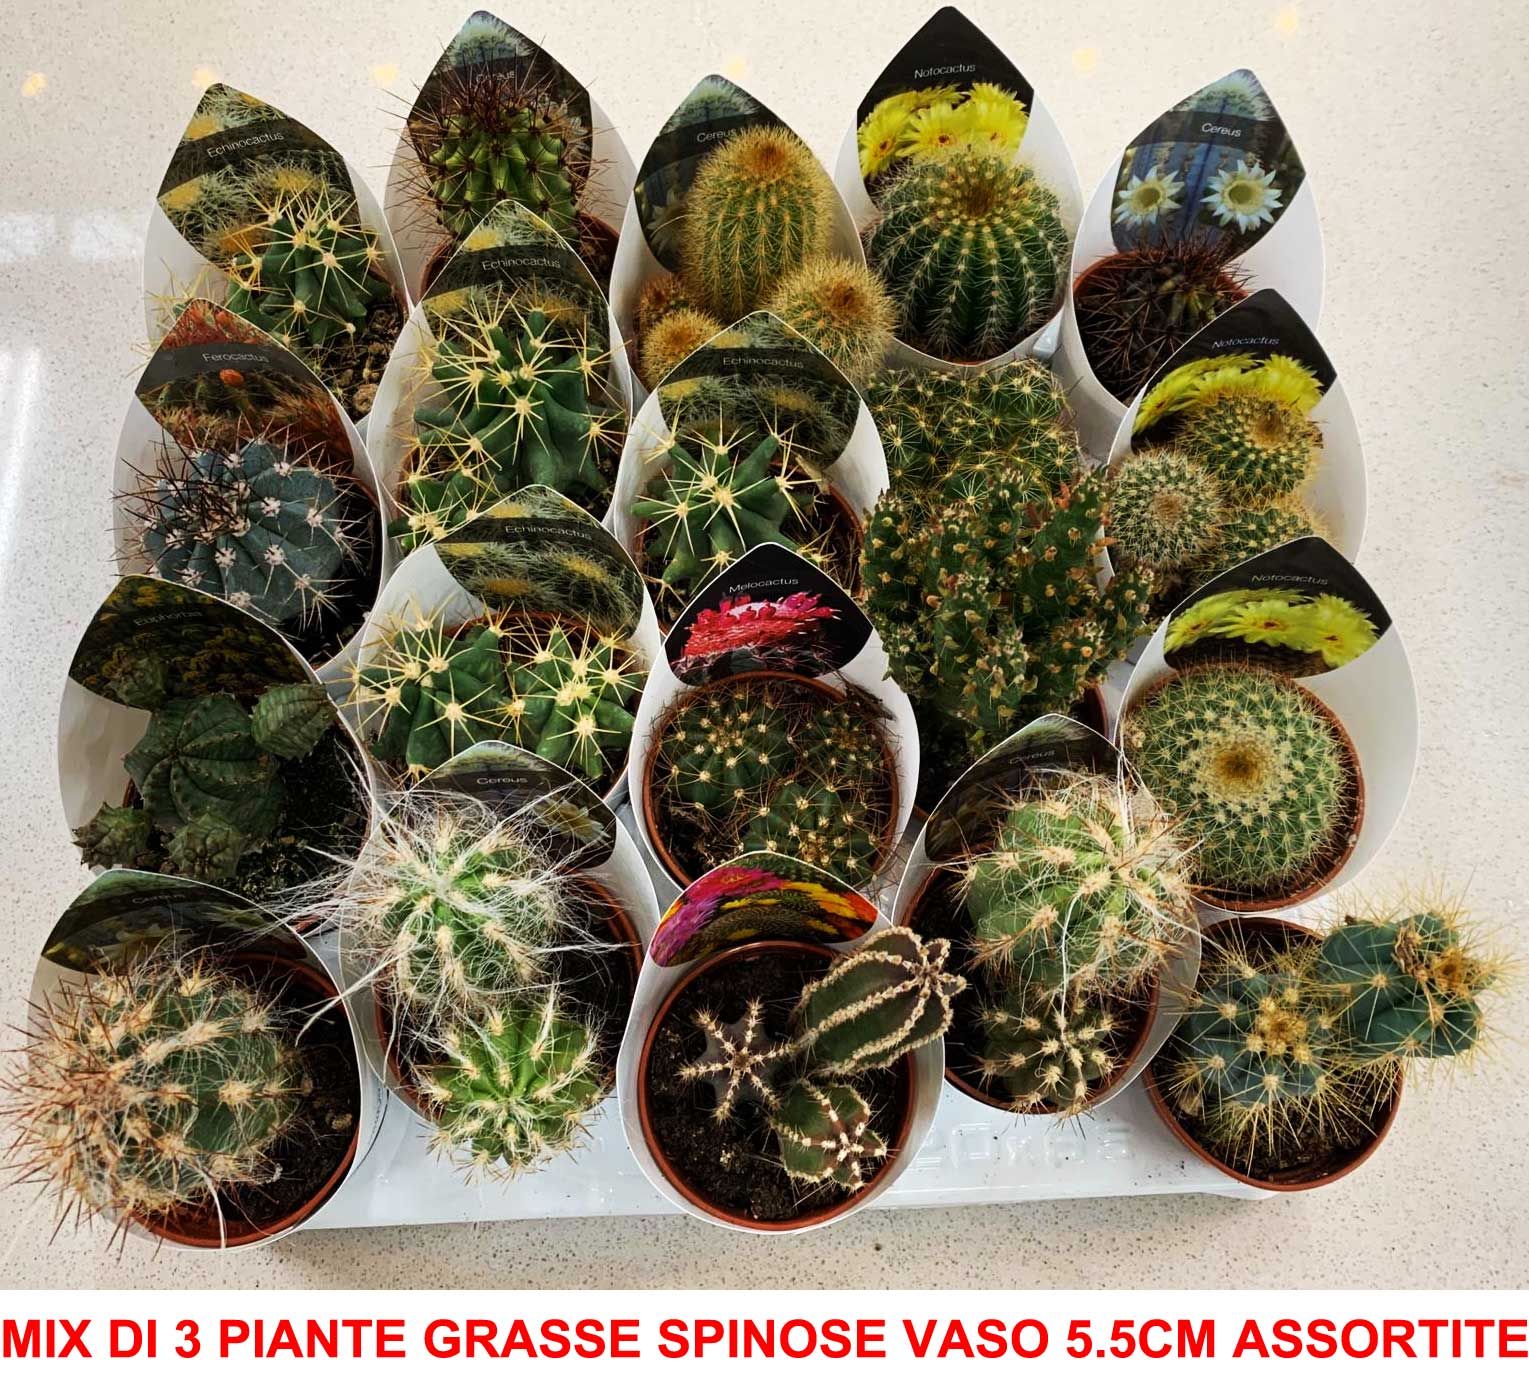 vasi piante grasse - Piante Grasse